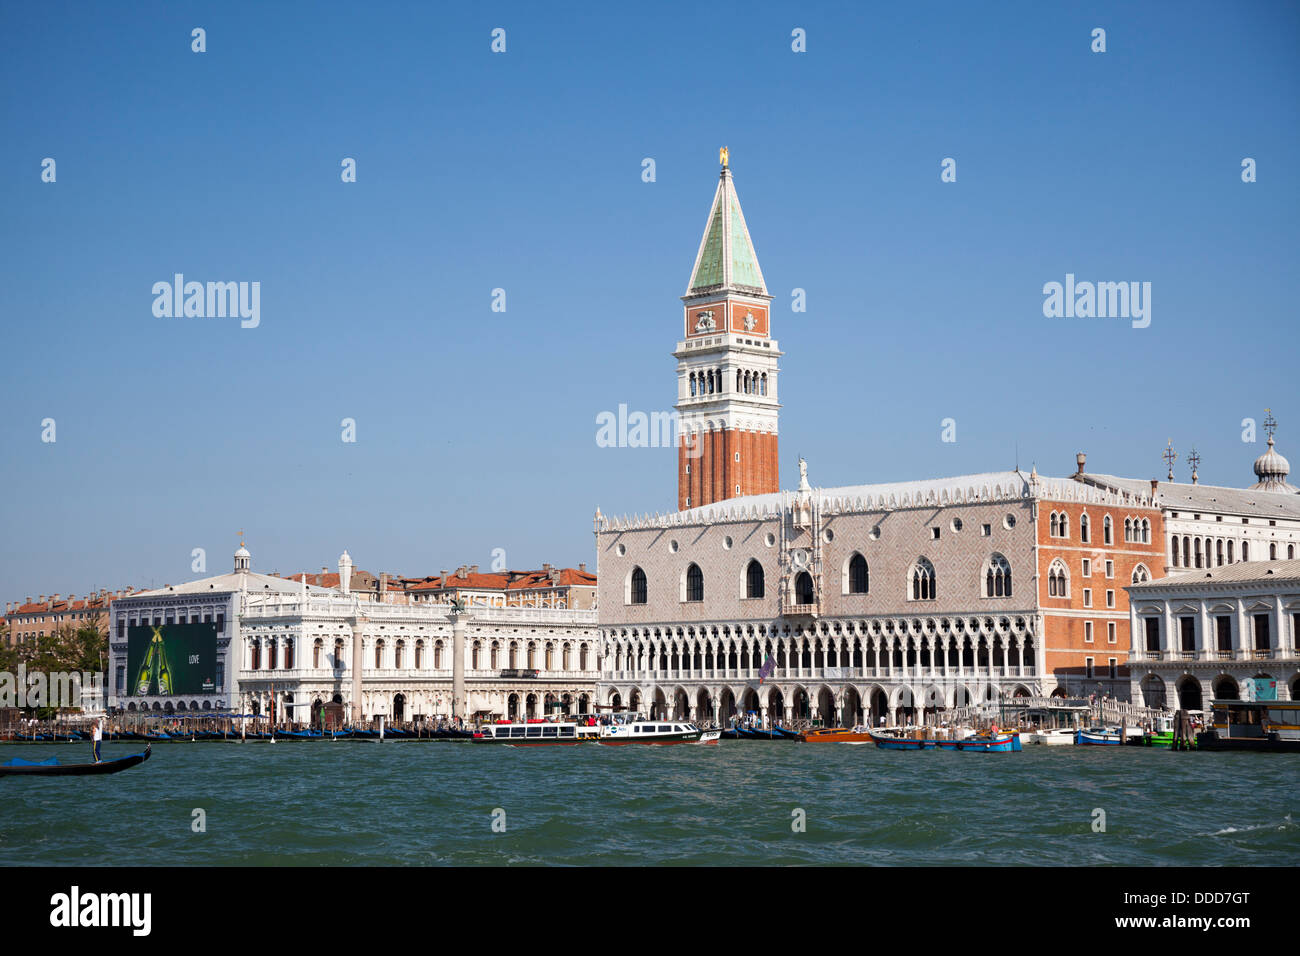 À Venise, la Place Saint Marc, le palais des Doges et une partie de la lagune. A Venise, la place St Marc, le palais des Doges. Banque D'Images